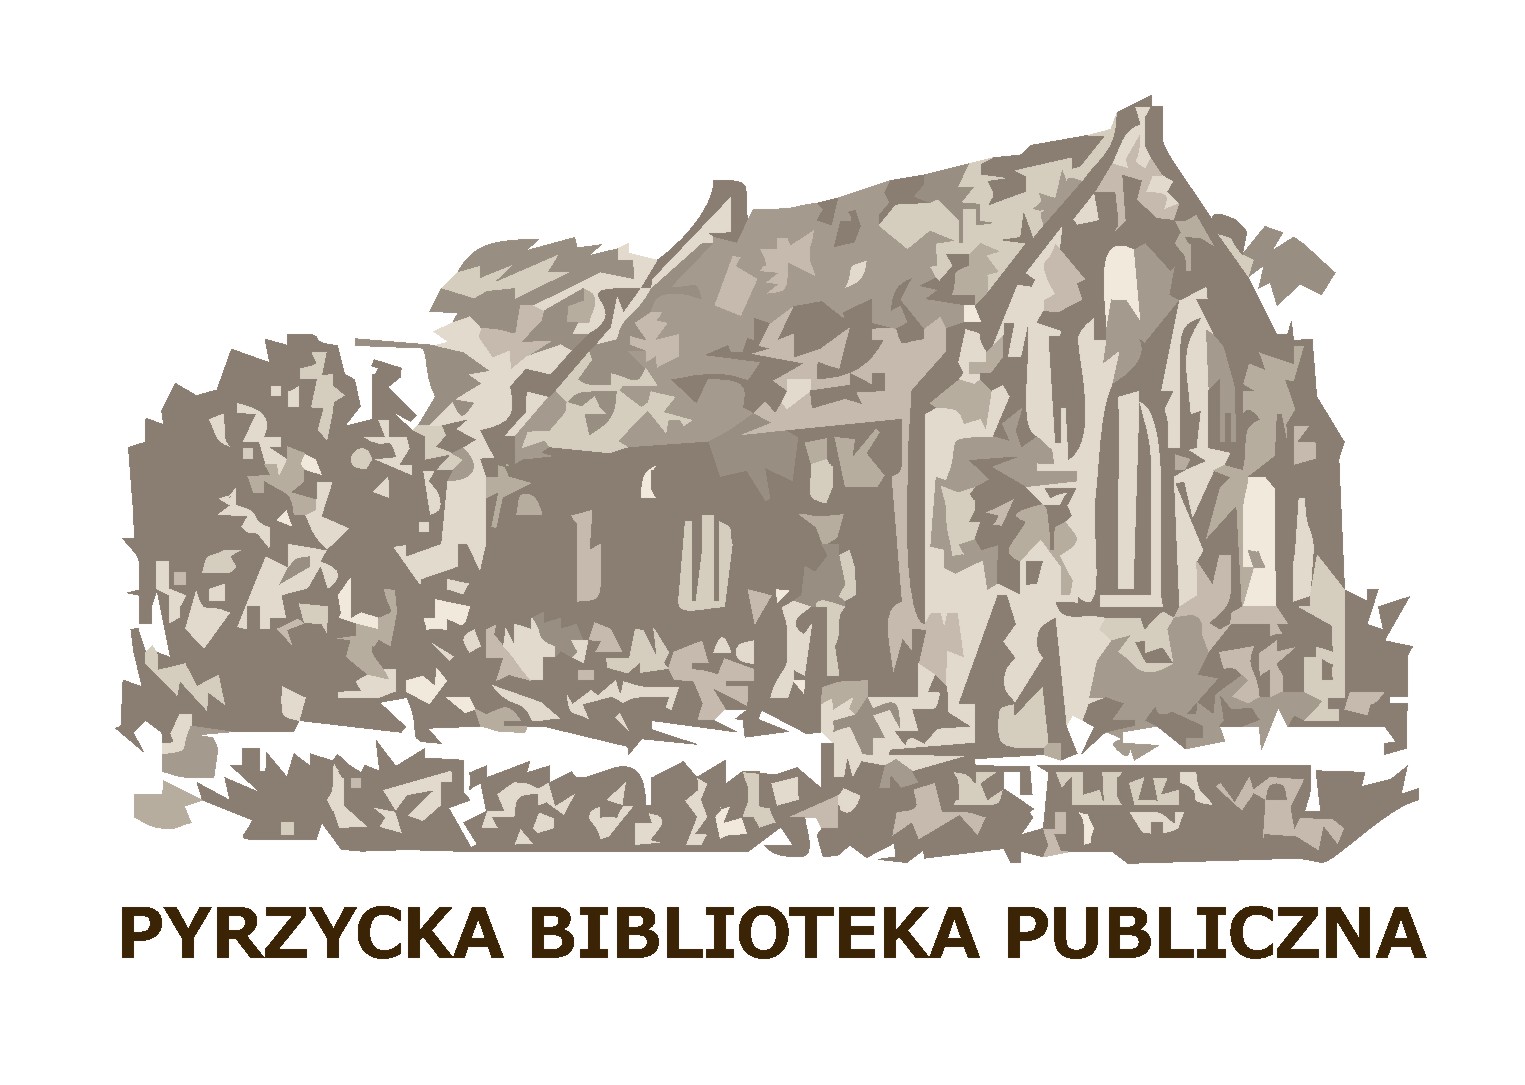 Pyrzycka Biblioteka Publiczna